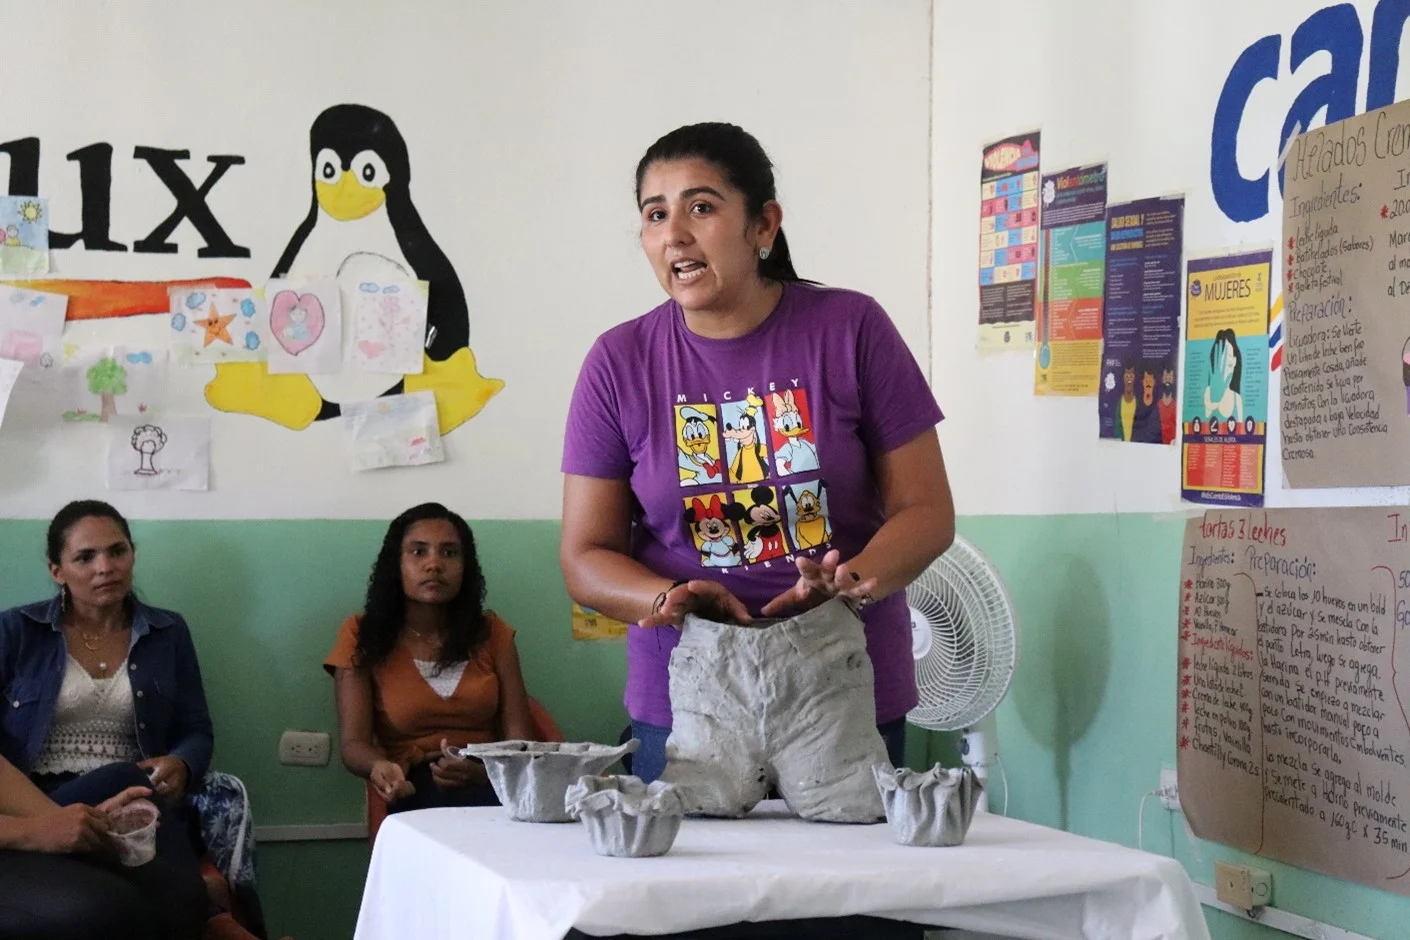 Mujeres abriendo caminos emprender desde América Latina